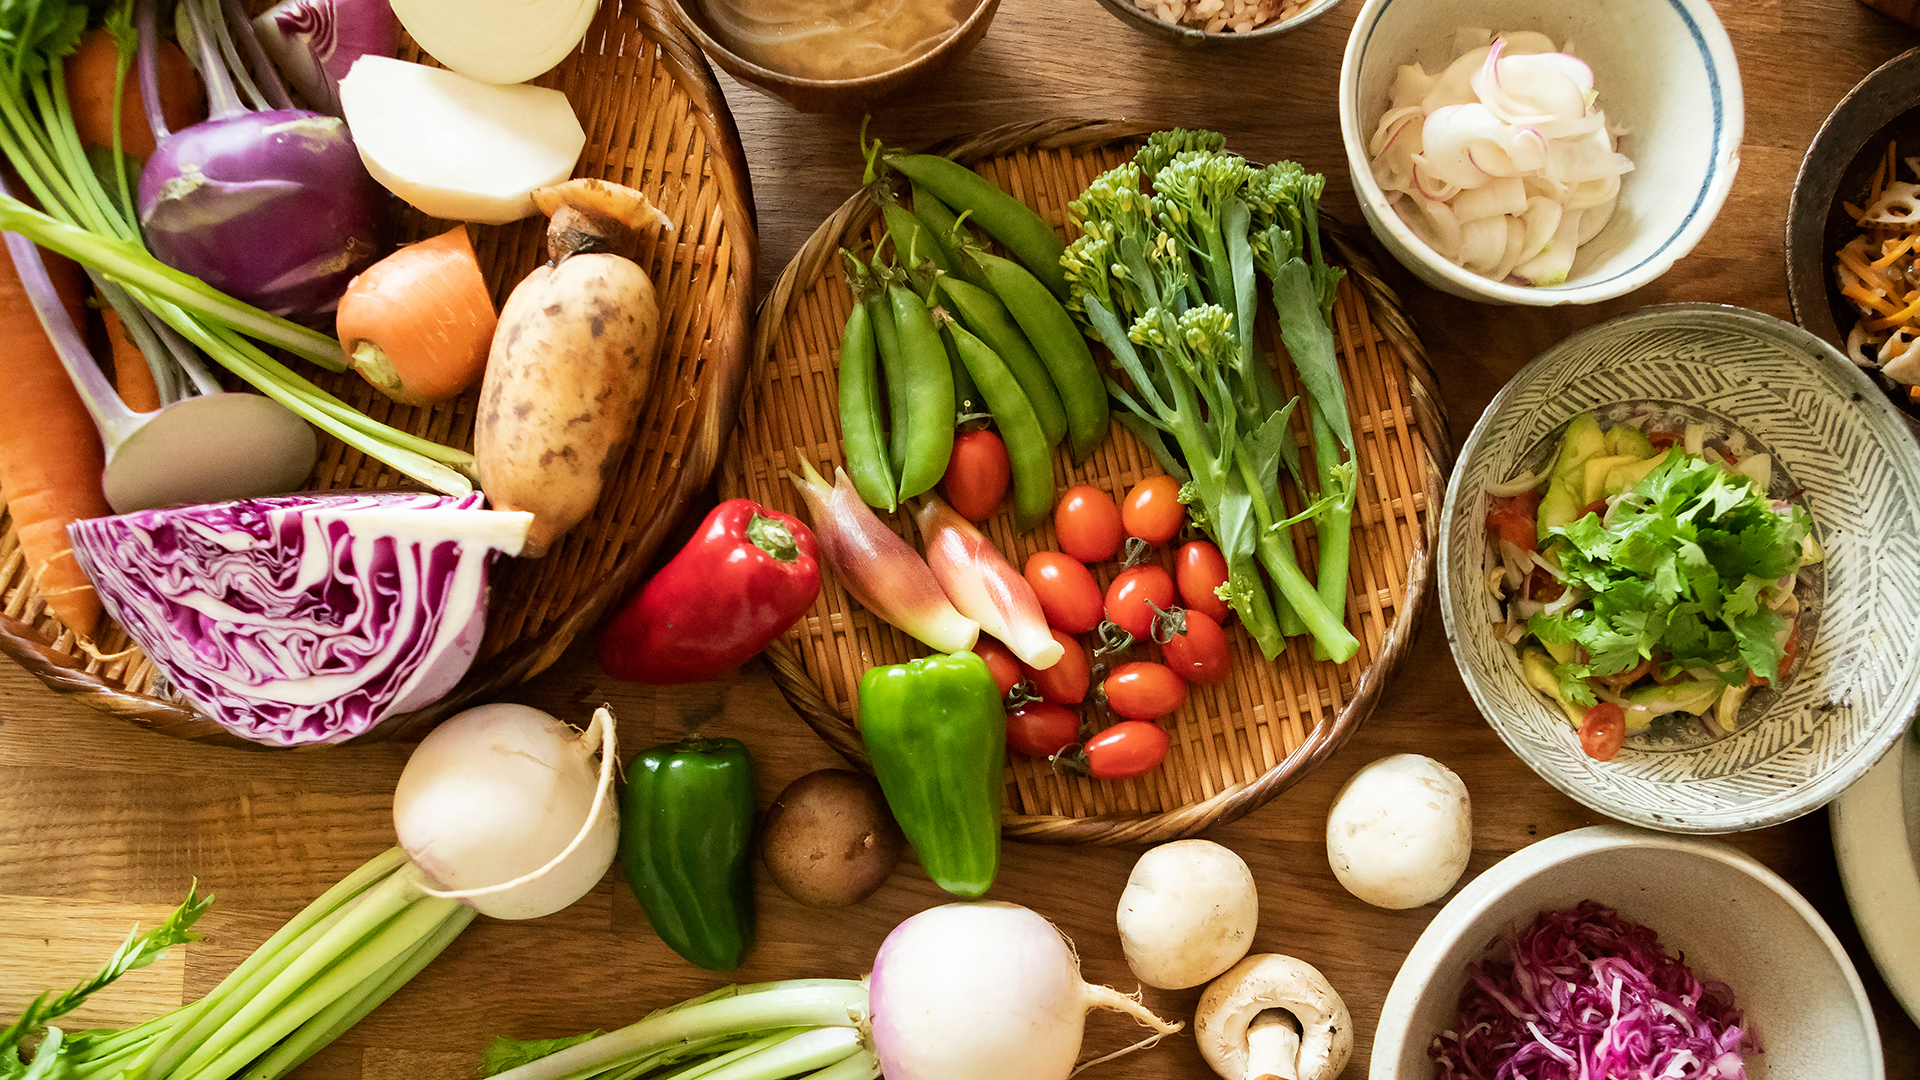 "Comer una dieta más rica en plantas podría mejorar el sistema inmunológico y potencialmente reducir el riesgo de contraer COVID-19” (Getty)